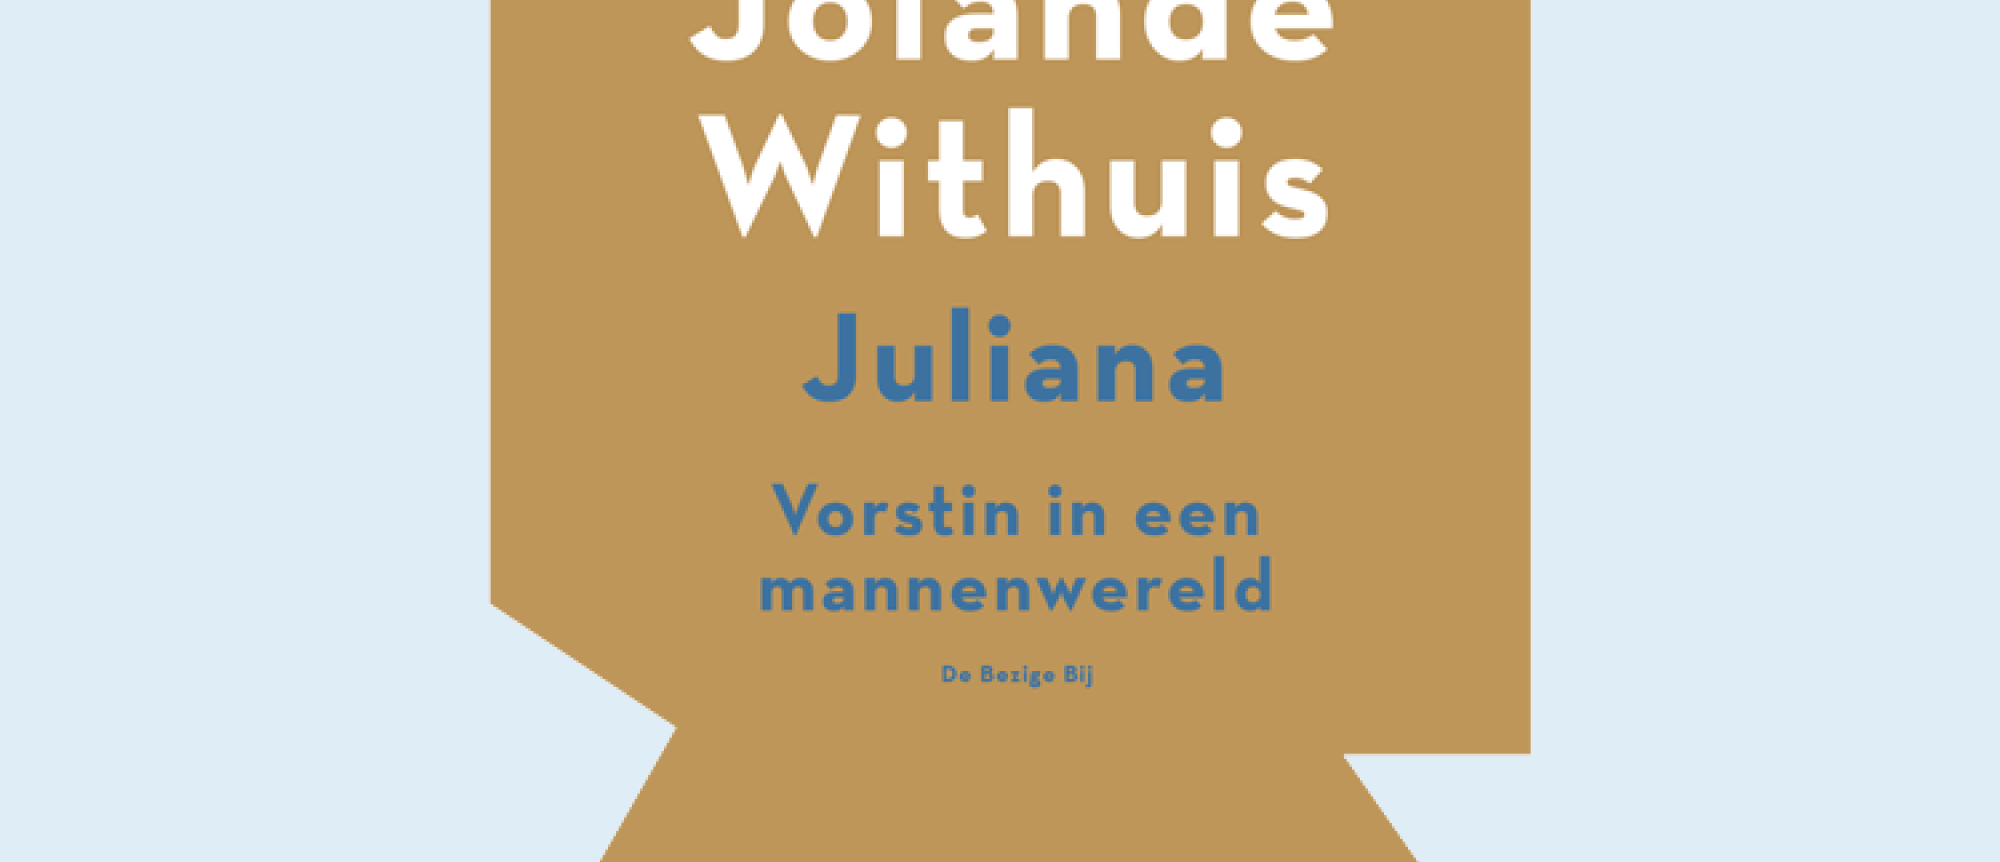 Jolande Withuis wint Donner Boekenprijs 2017